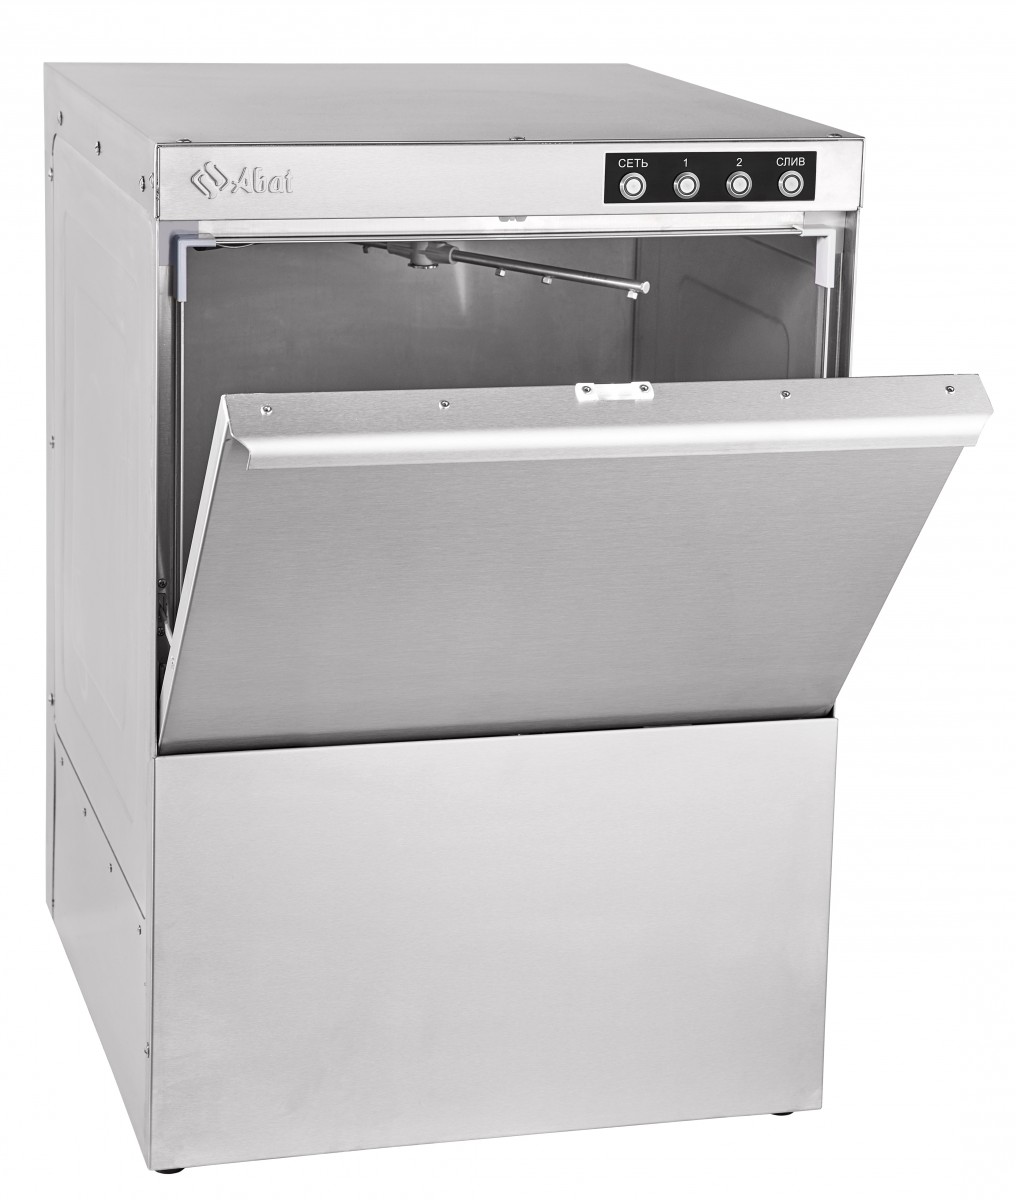 Фронтальная посудомоечная машина Abat МПК-500Ф-01